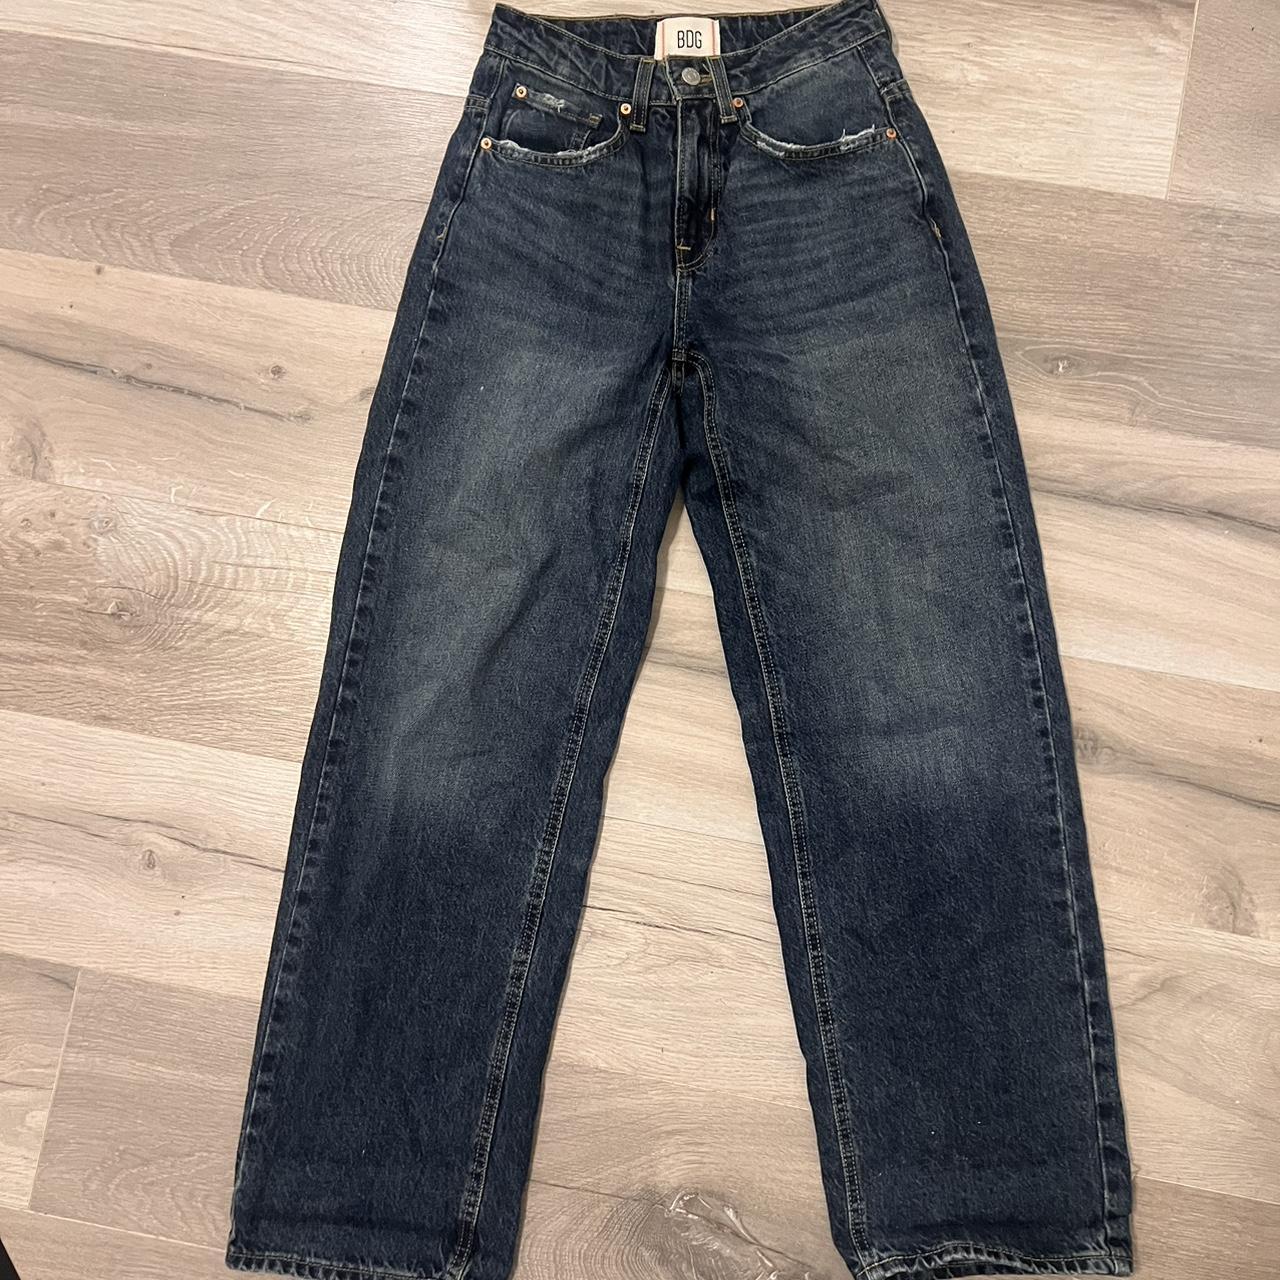 BDG bella baggy jeans dark wash size 24